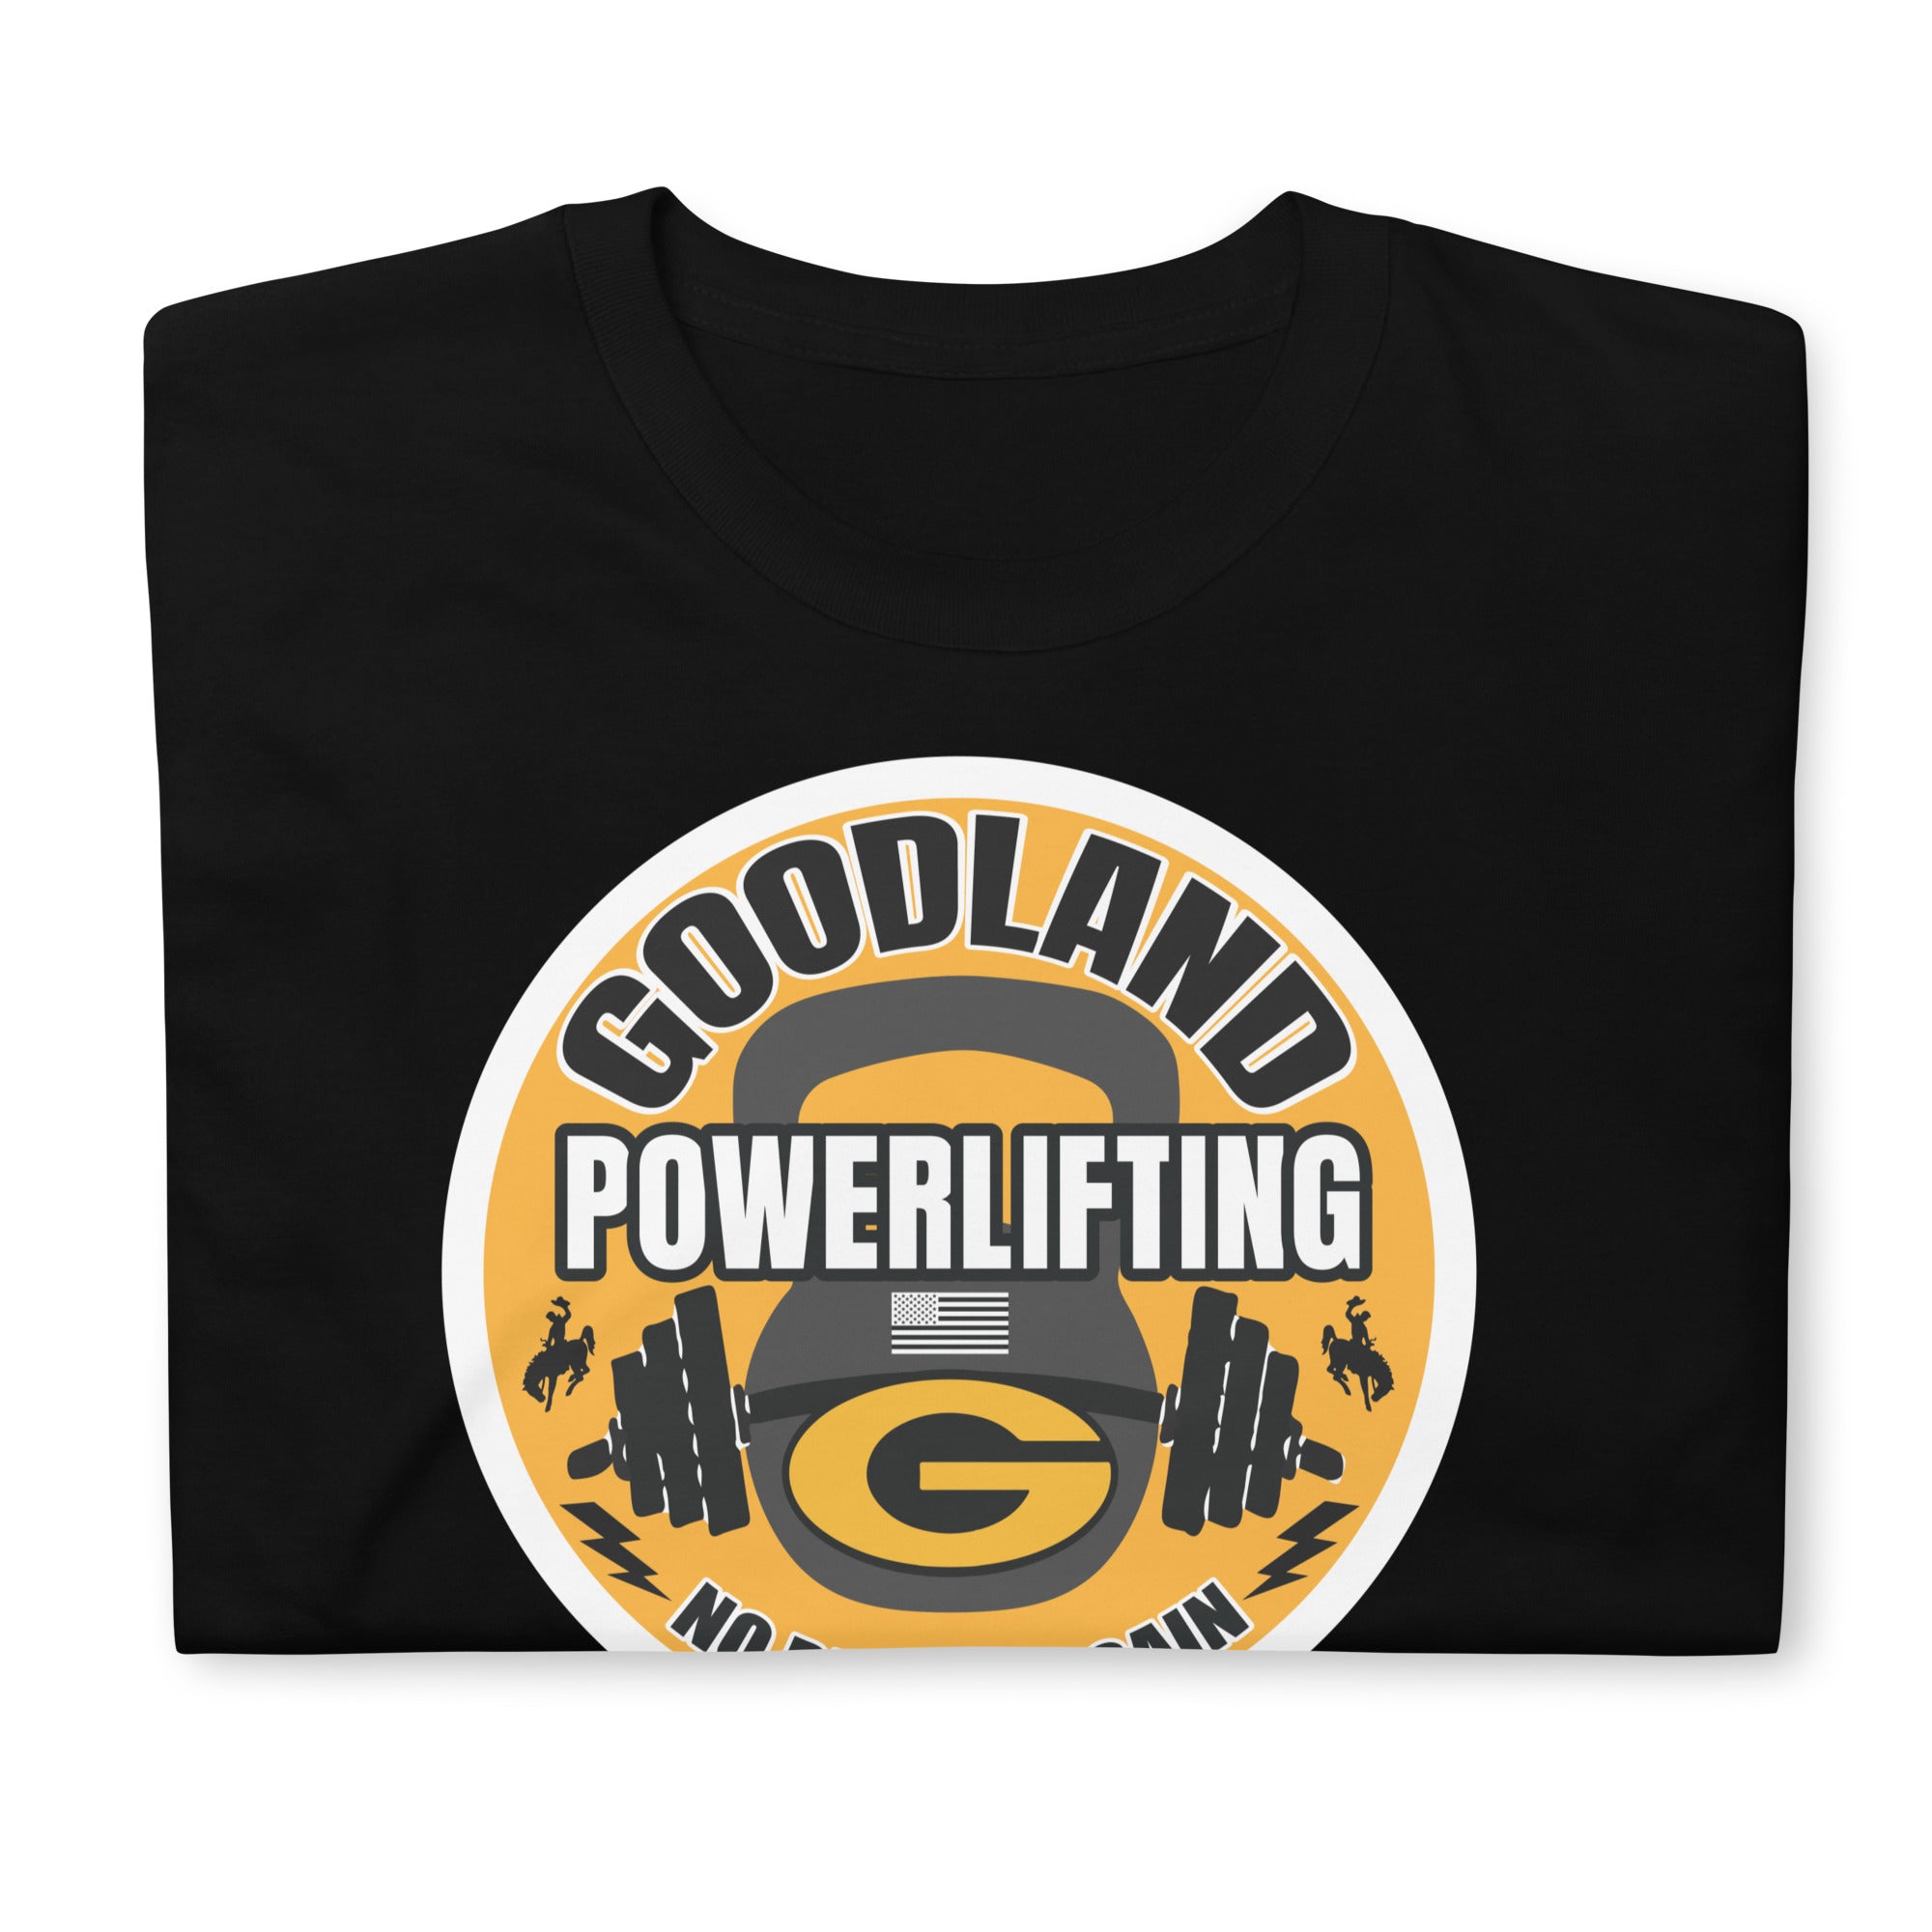 Goodland Powerlifting Short-Sleeve Unisex T-Shirt